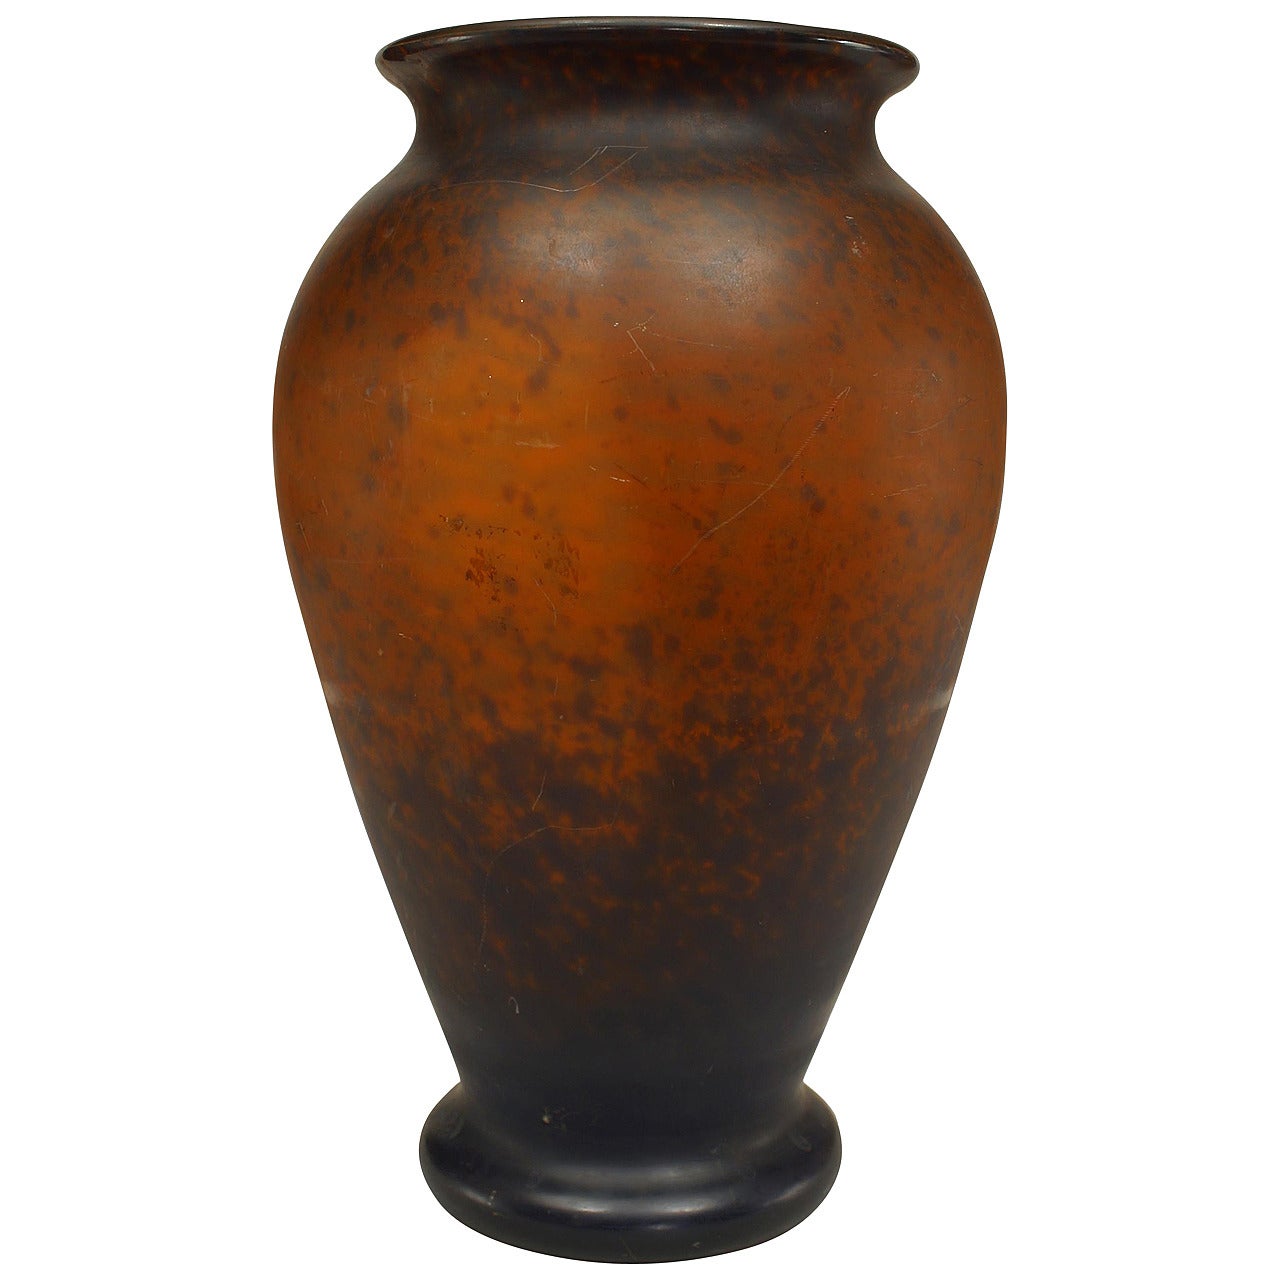 Vase en verre moucheté marron de style Art nouveau français